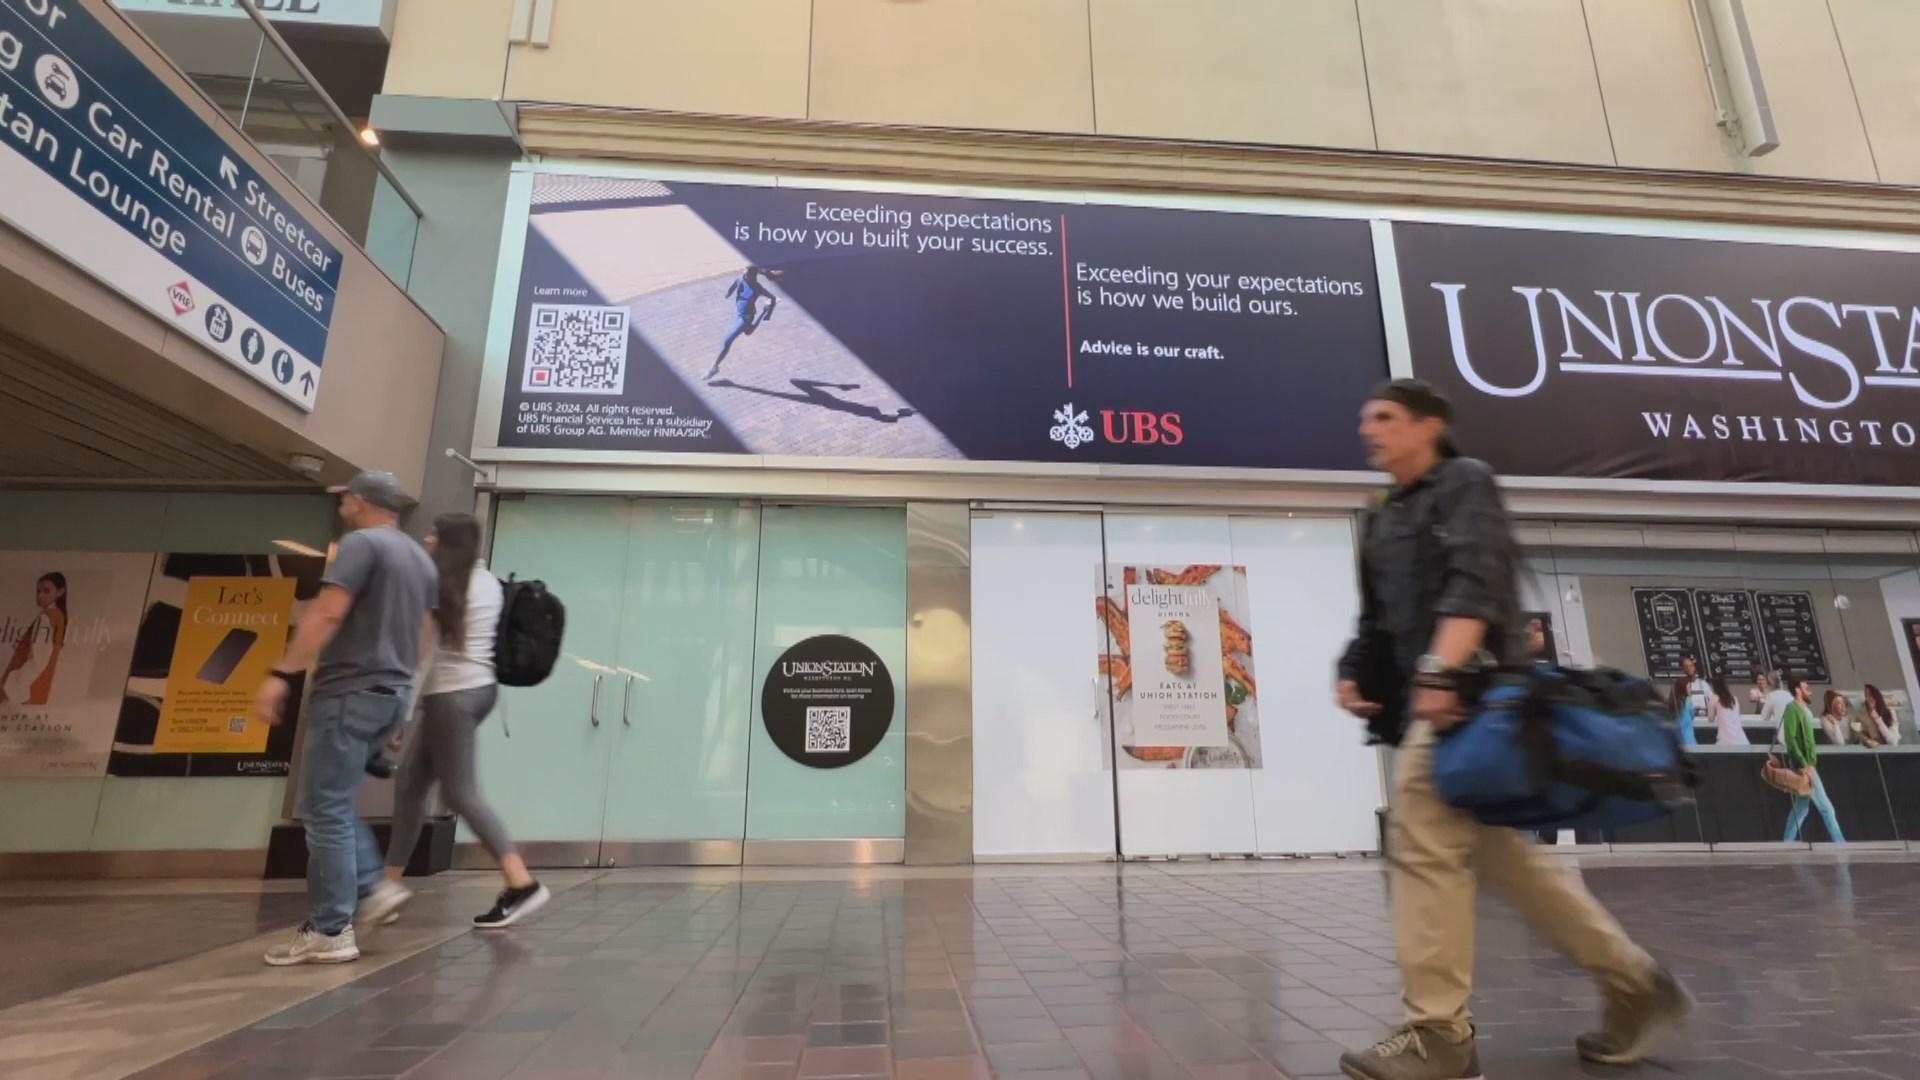 Une publicité pour UBS dans la gare de Washington. [RTS - Gaspard Kühn]